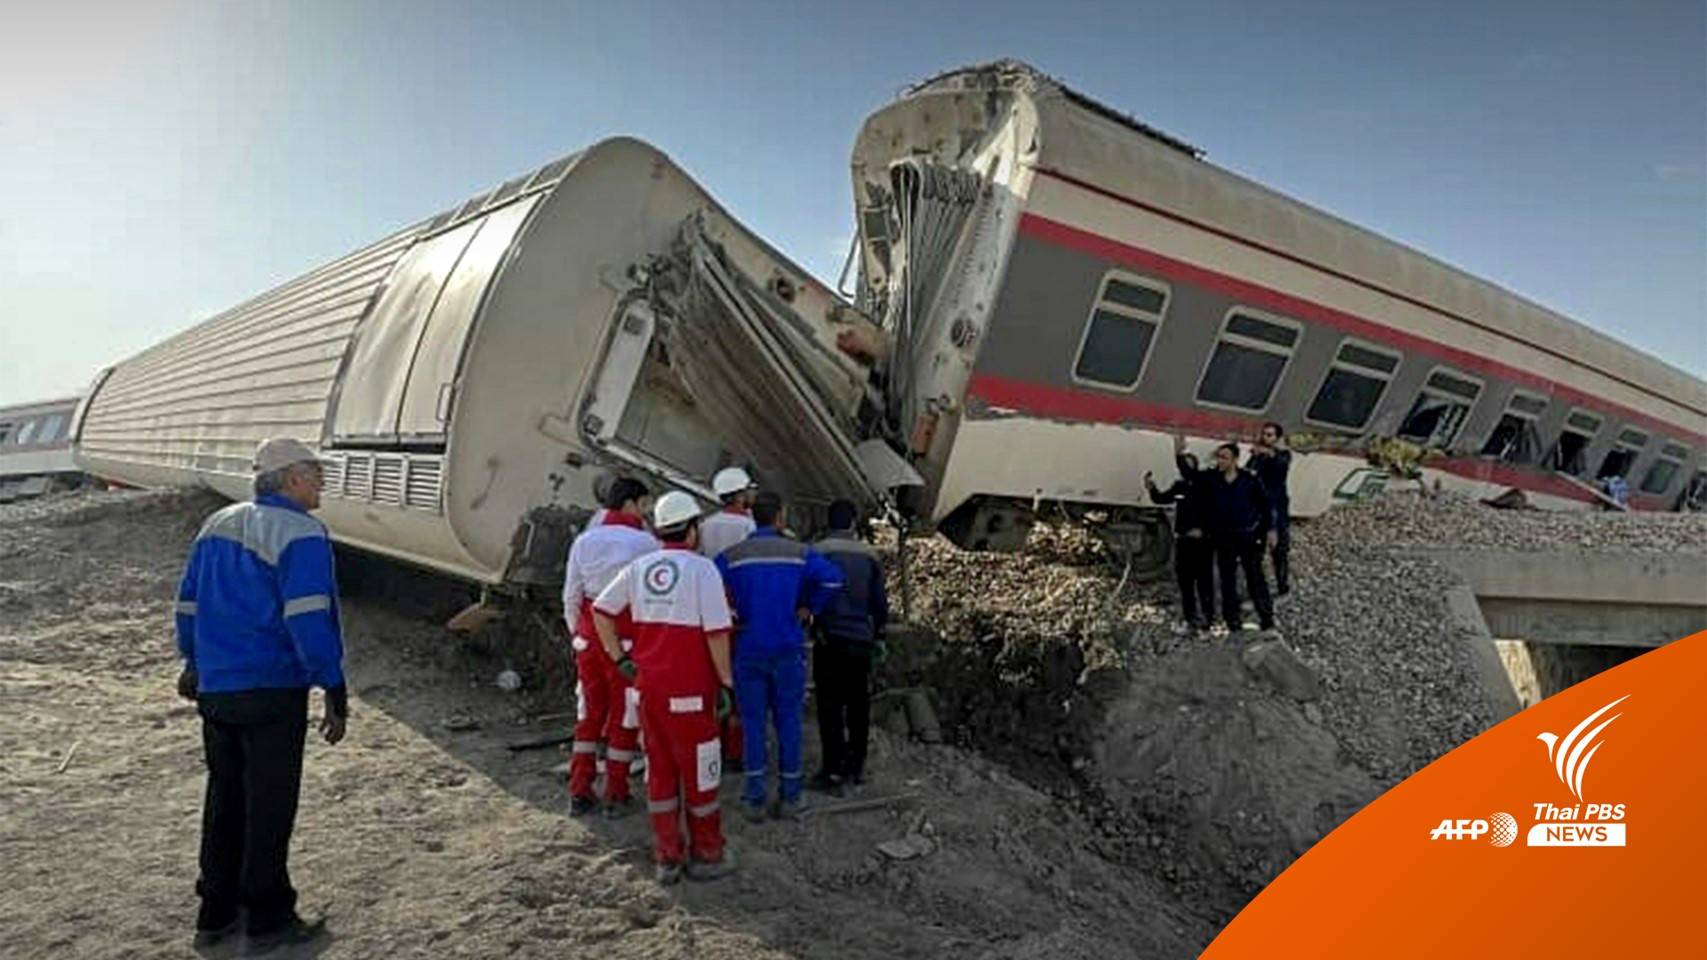 รถไฟอิหร่านชนรถขุดเสียหลักตกราง เสียชีวิตกว่า 20 คน 